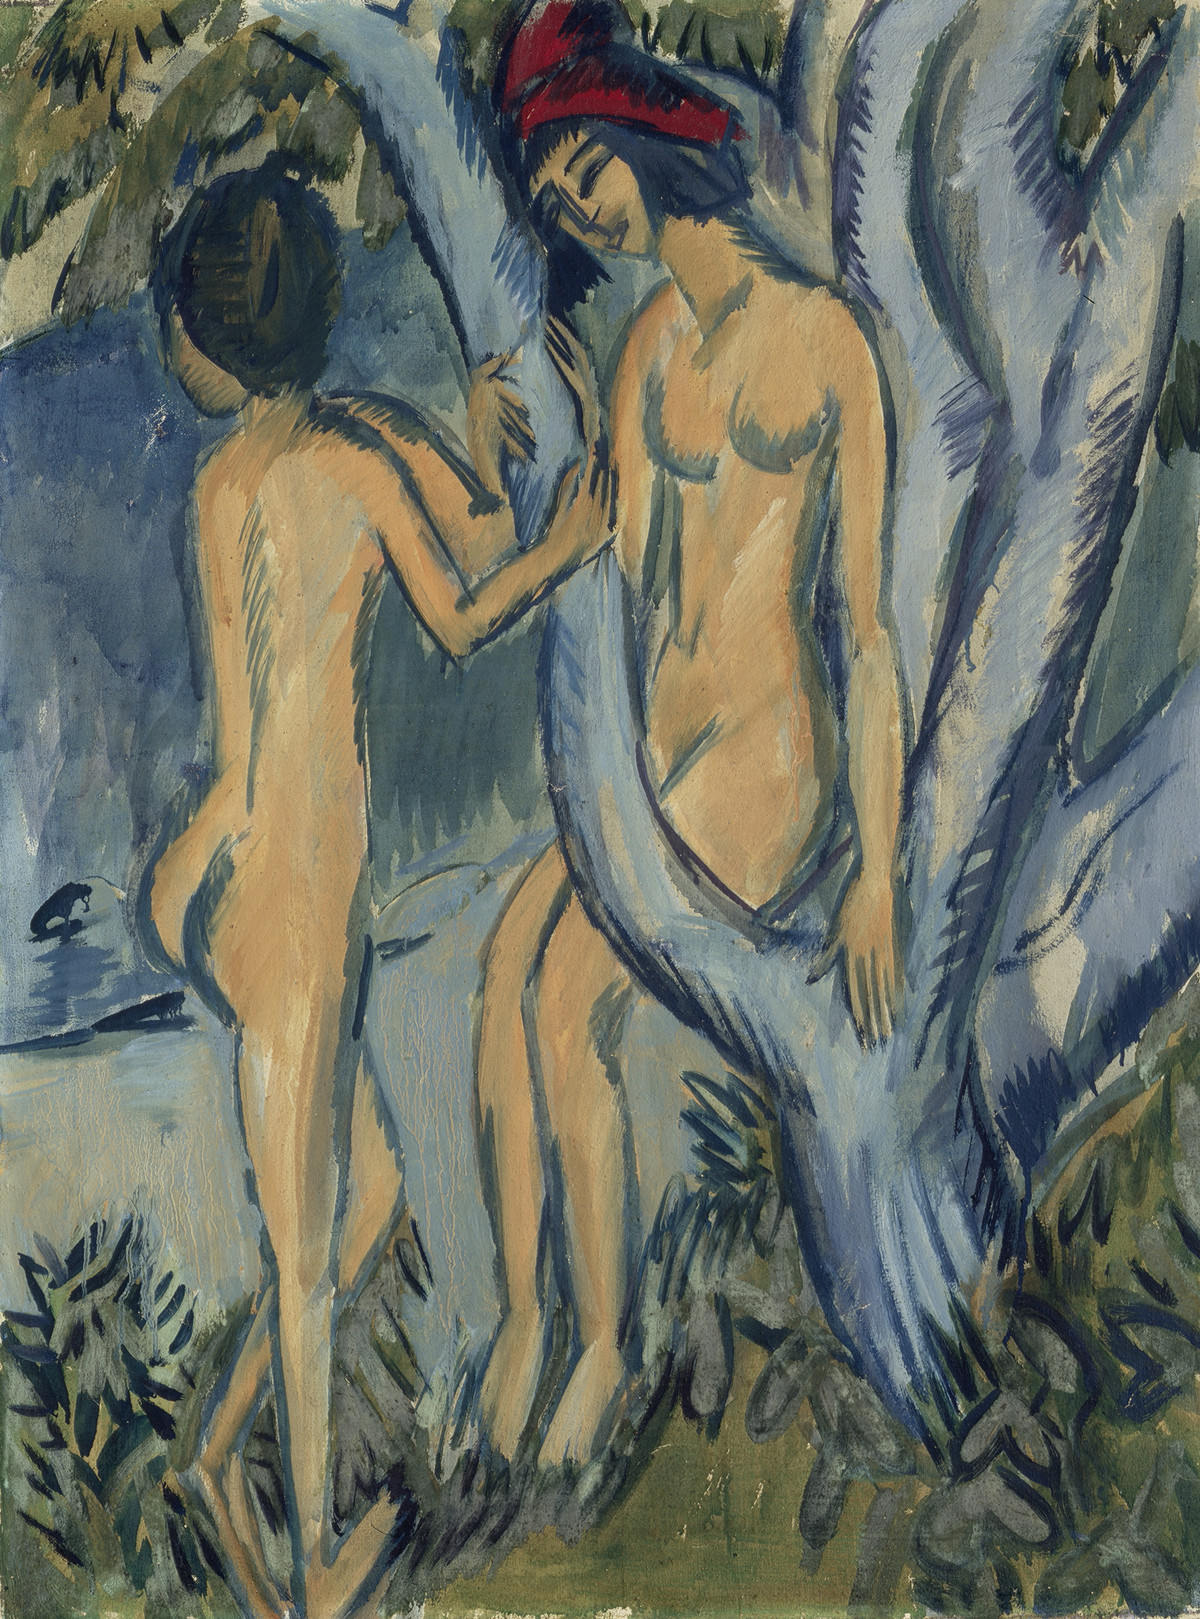 Ernst Ludwig Kirchner: Zwei Akte an einem Baum, Fehmarn, 1912/13, Öl auf Leinwand, 100 x 75 cm, Privatsammlung